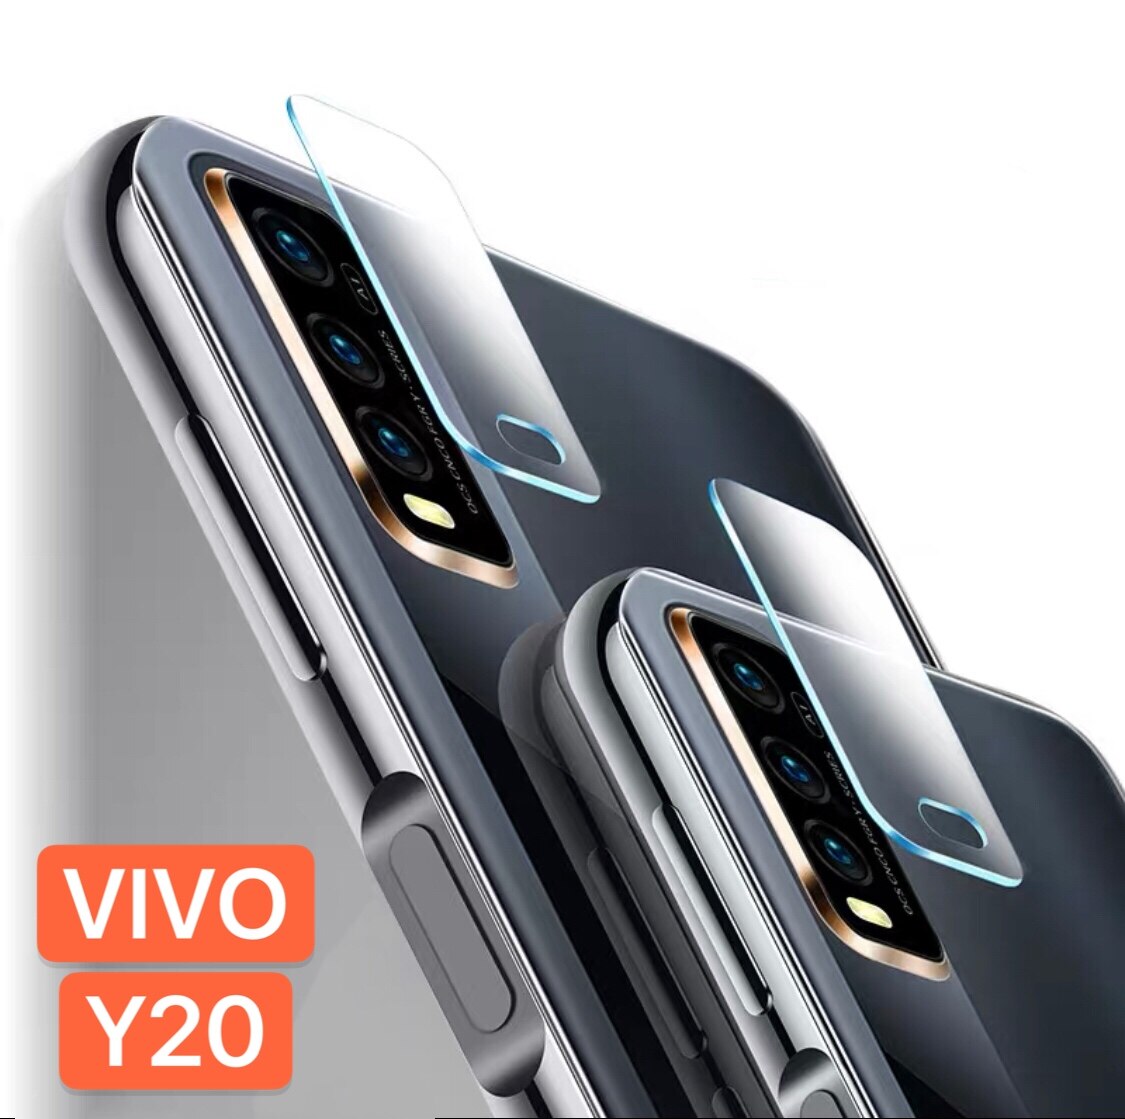 ฟิล์มเลนส์กล้อง Vivo Y20 ( ได้ 1ชิ้น ) ฟิล์มกระจกเลนส์กล้อง VIVO Y20 Camera Lens Tempered Glass รัปประกันสินค้า